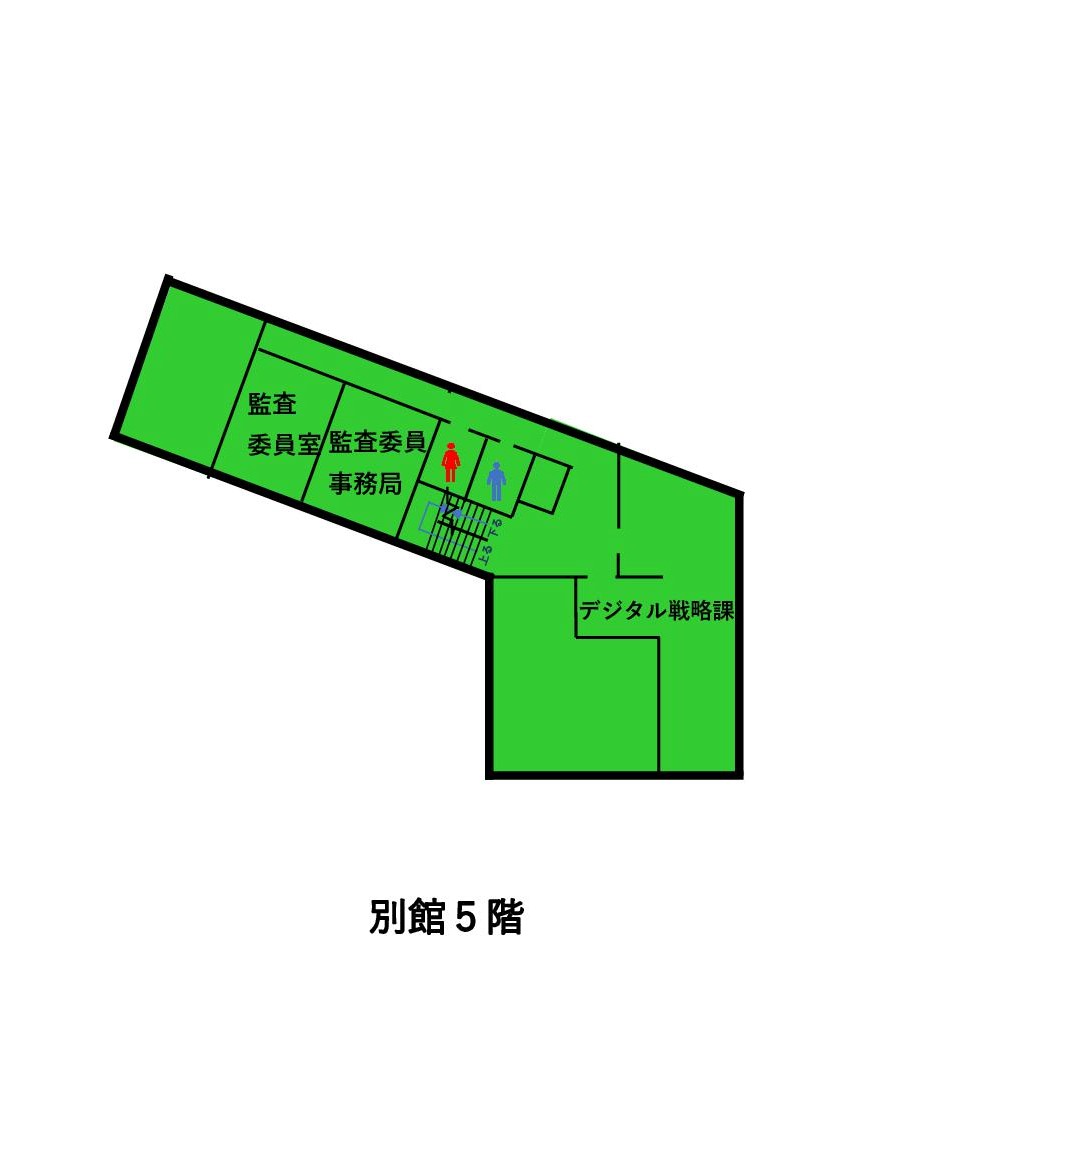 松江市役所別館5階の平面図